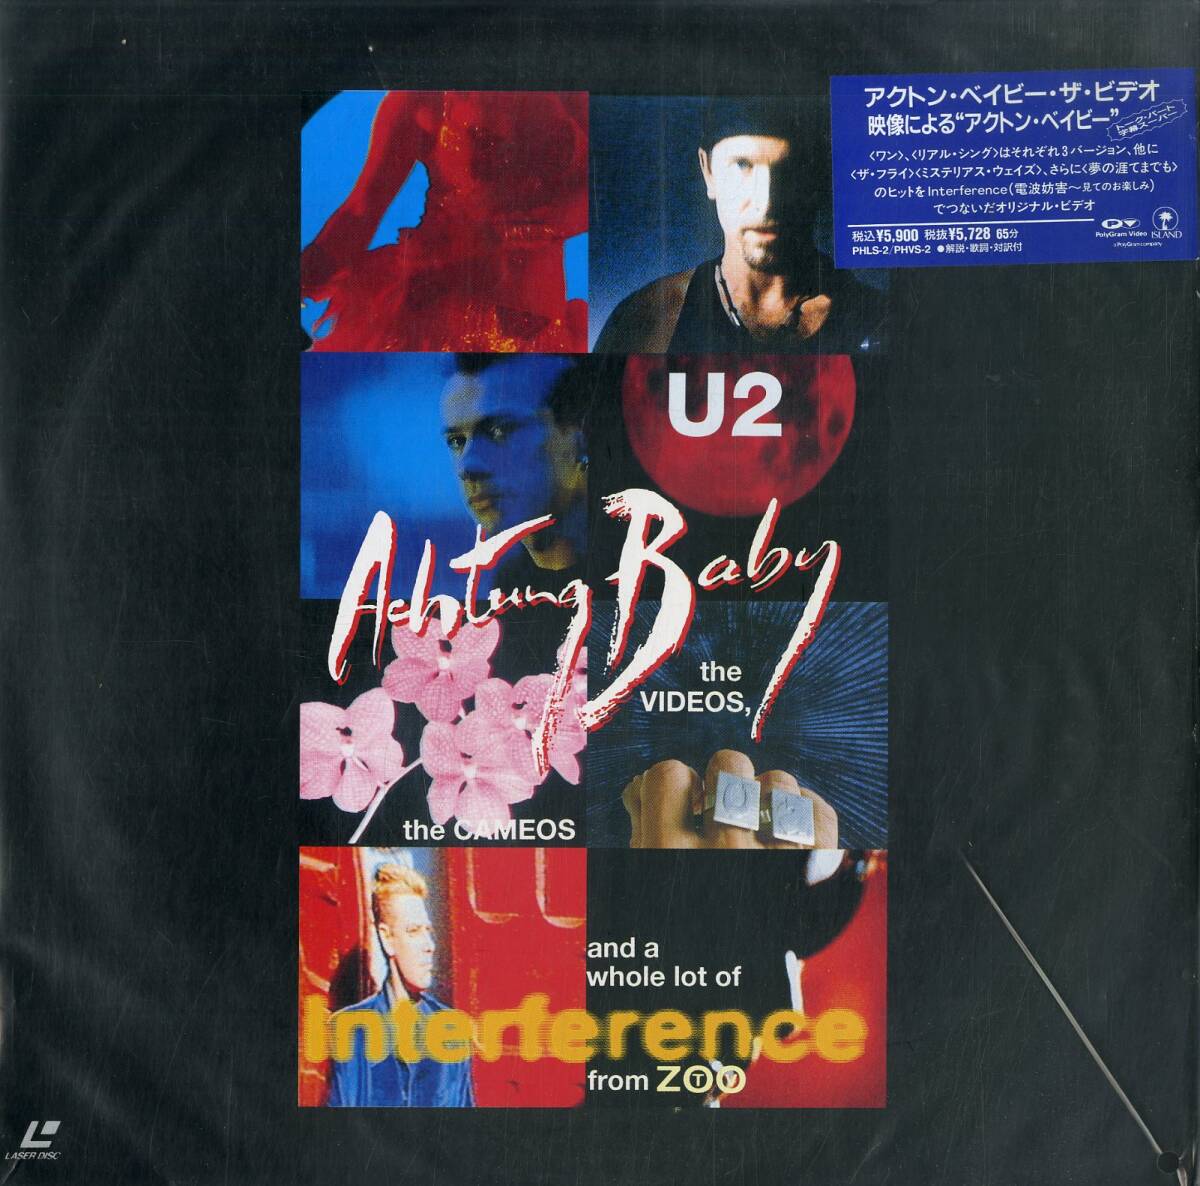 B00148887/LD/U2「アクトン・ベイビー・ザ・ ビデオ、名場面集と電波妨害」の画像1